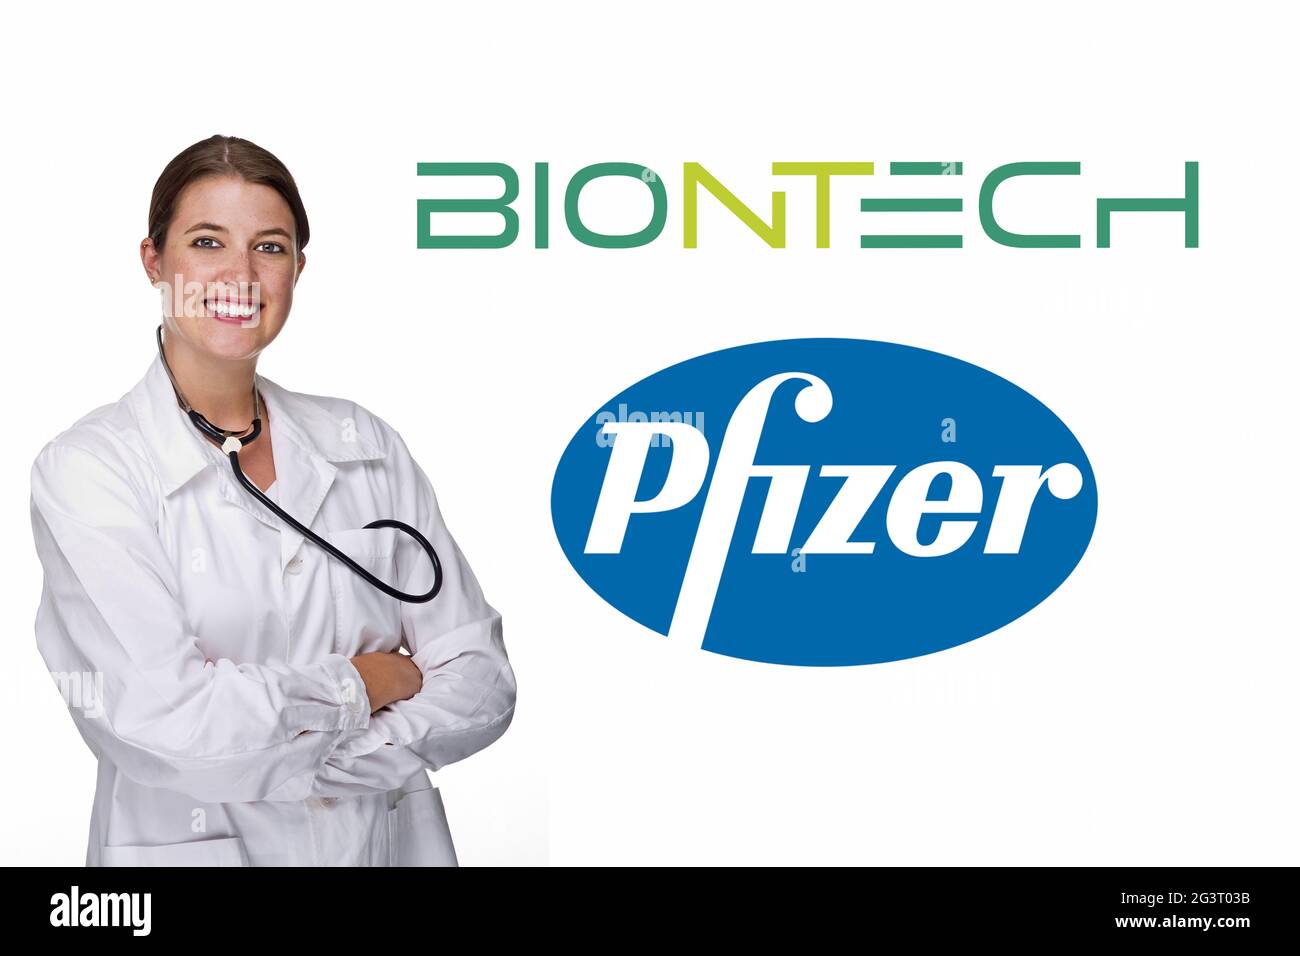 Jeune médecin avec stéthoscope devant le logo de Biontech Pfizer Banque D'Images